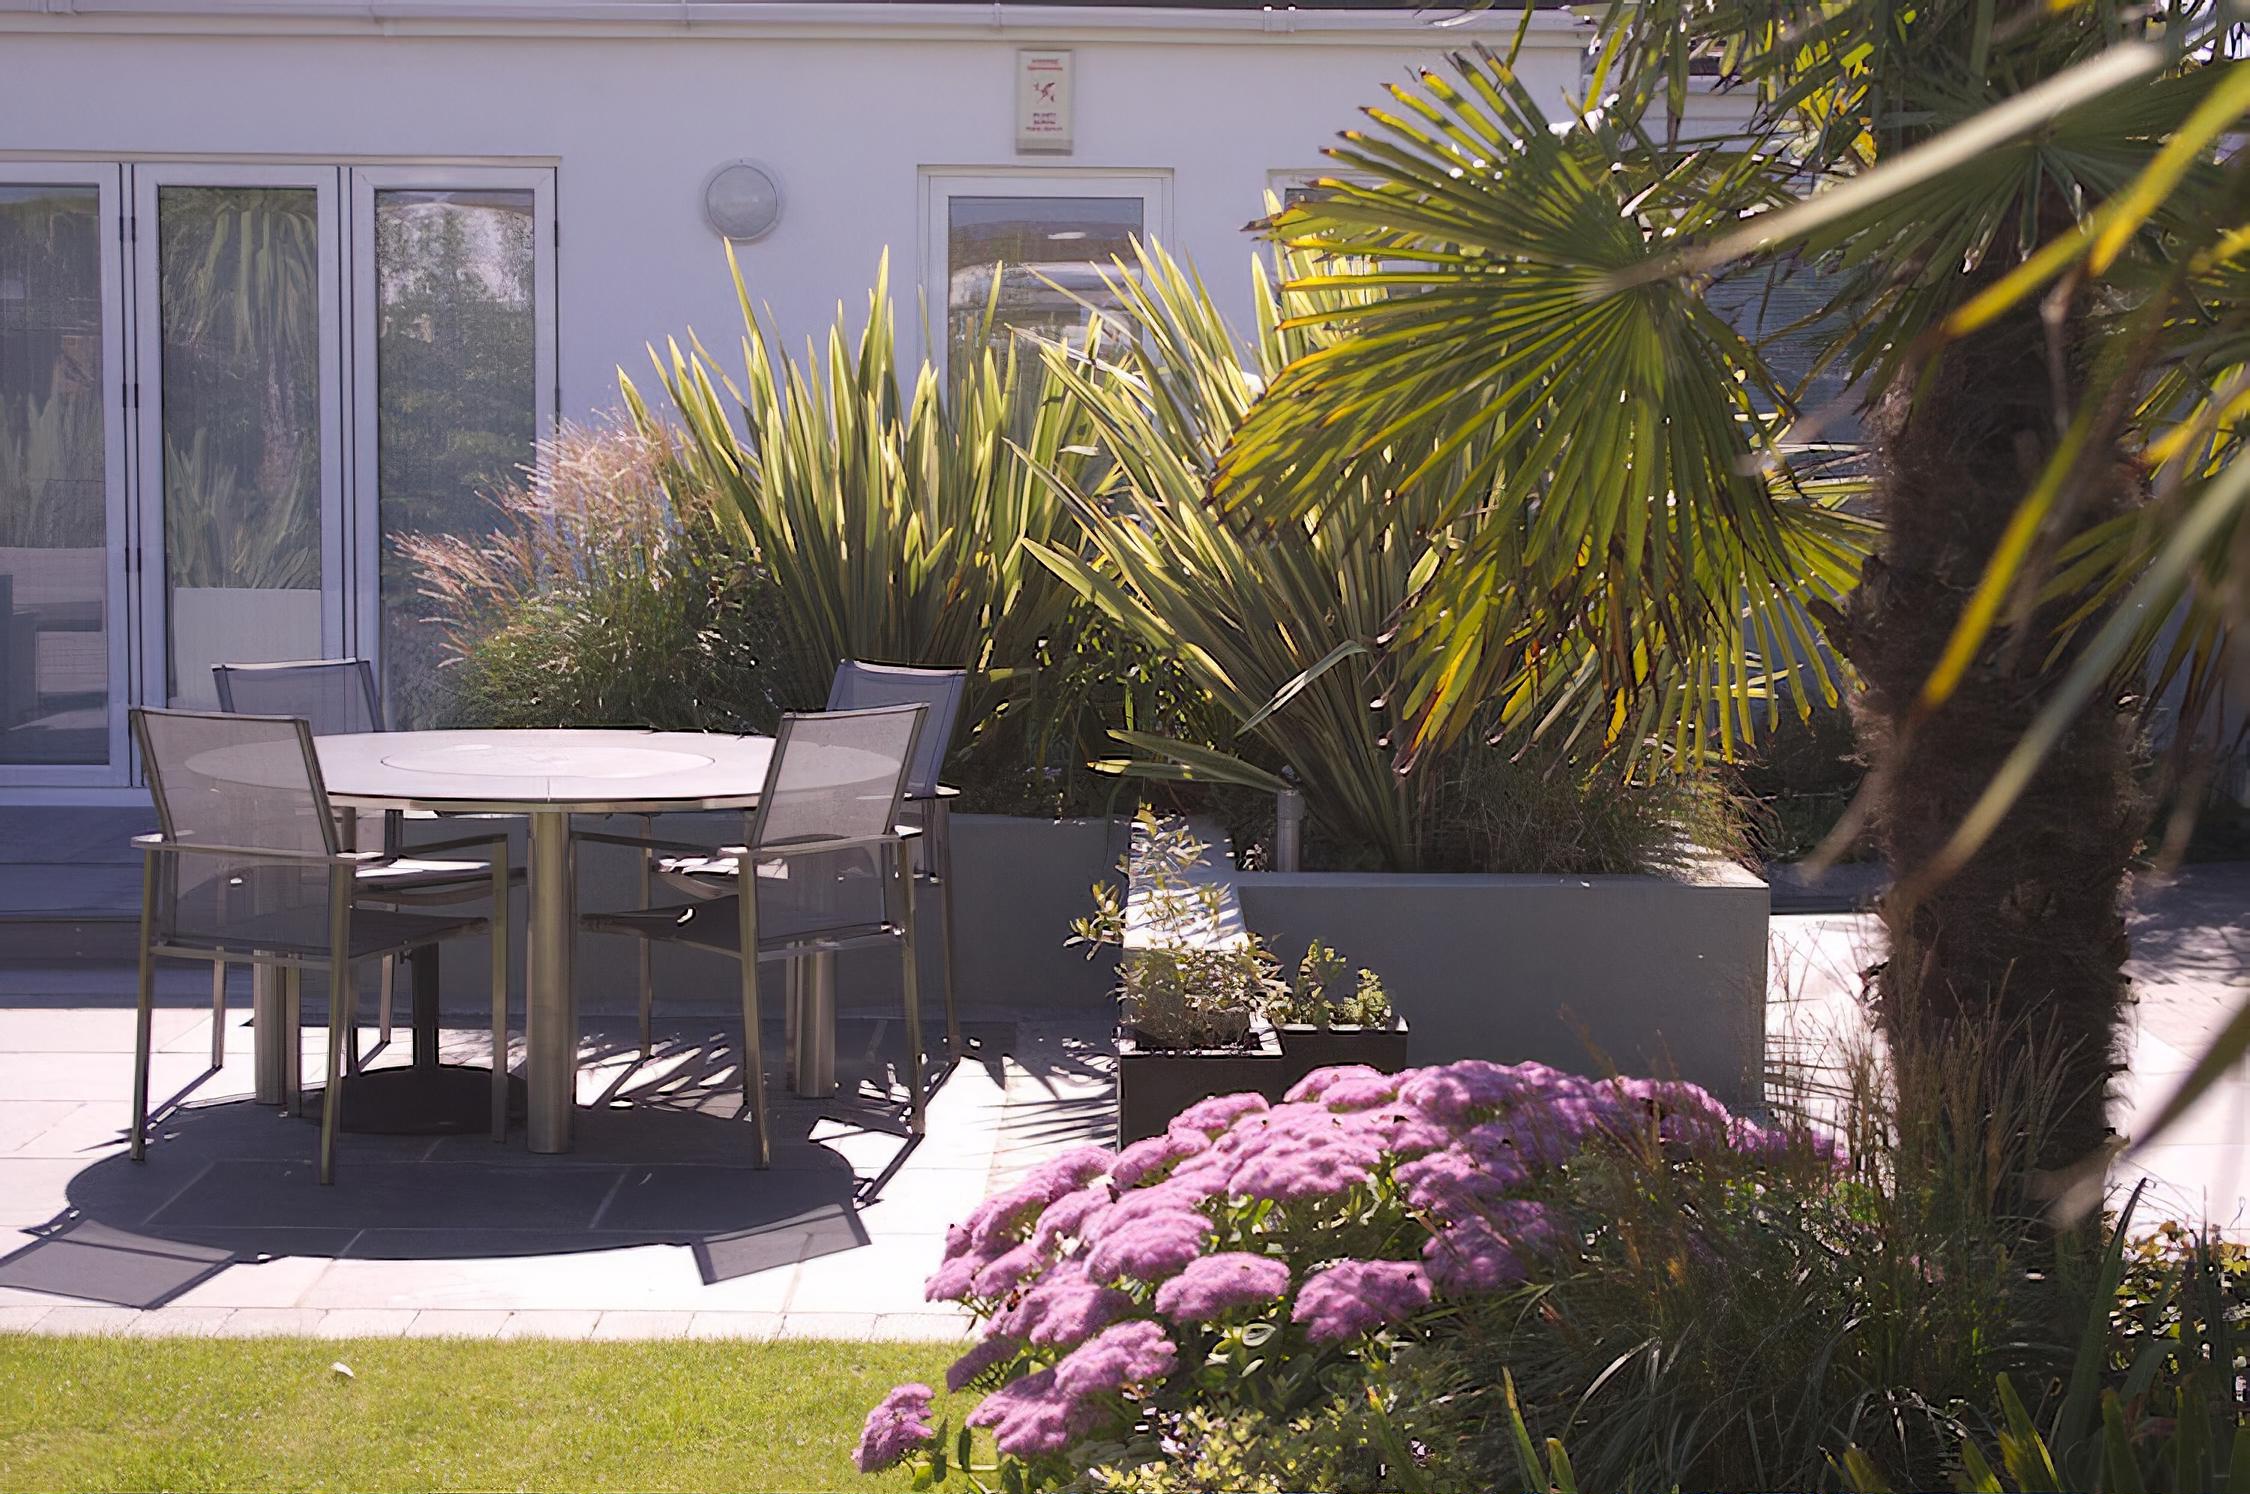 Contemporary Garden near Coast, Dorset designed by Helen Elks-Smith